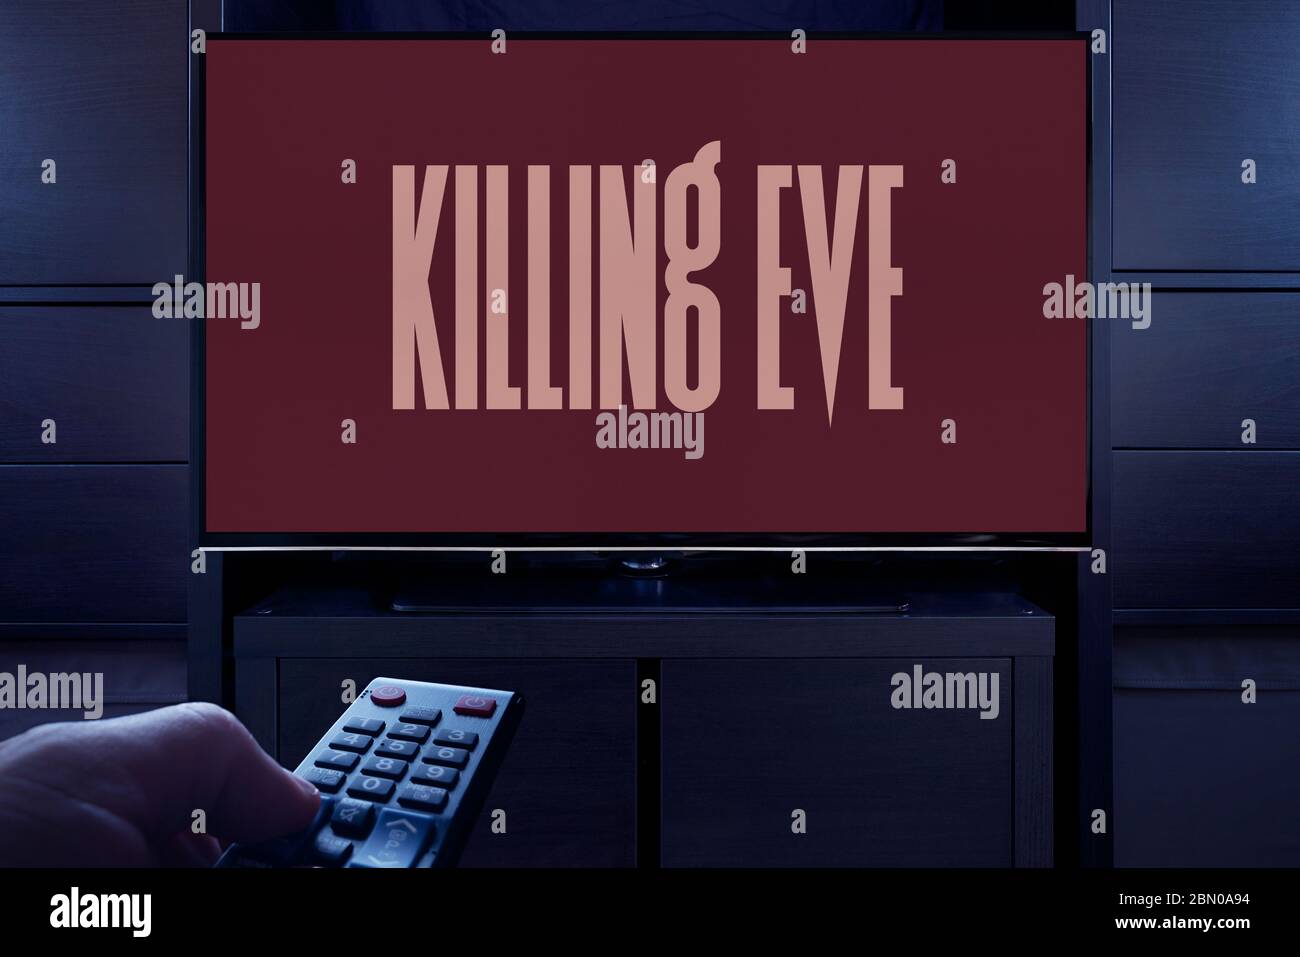 Un homme pointe une télécommande de télévision sur le téléviseur qui affiche l'écran principal de la veille du meurtre (usage éditorial uniquement). Banque D'Images